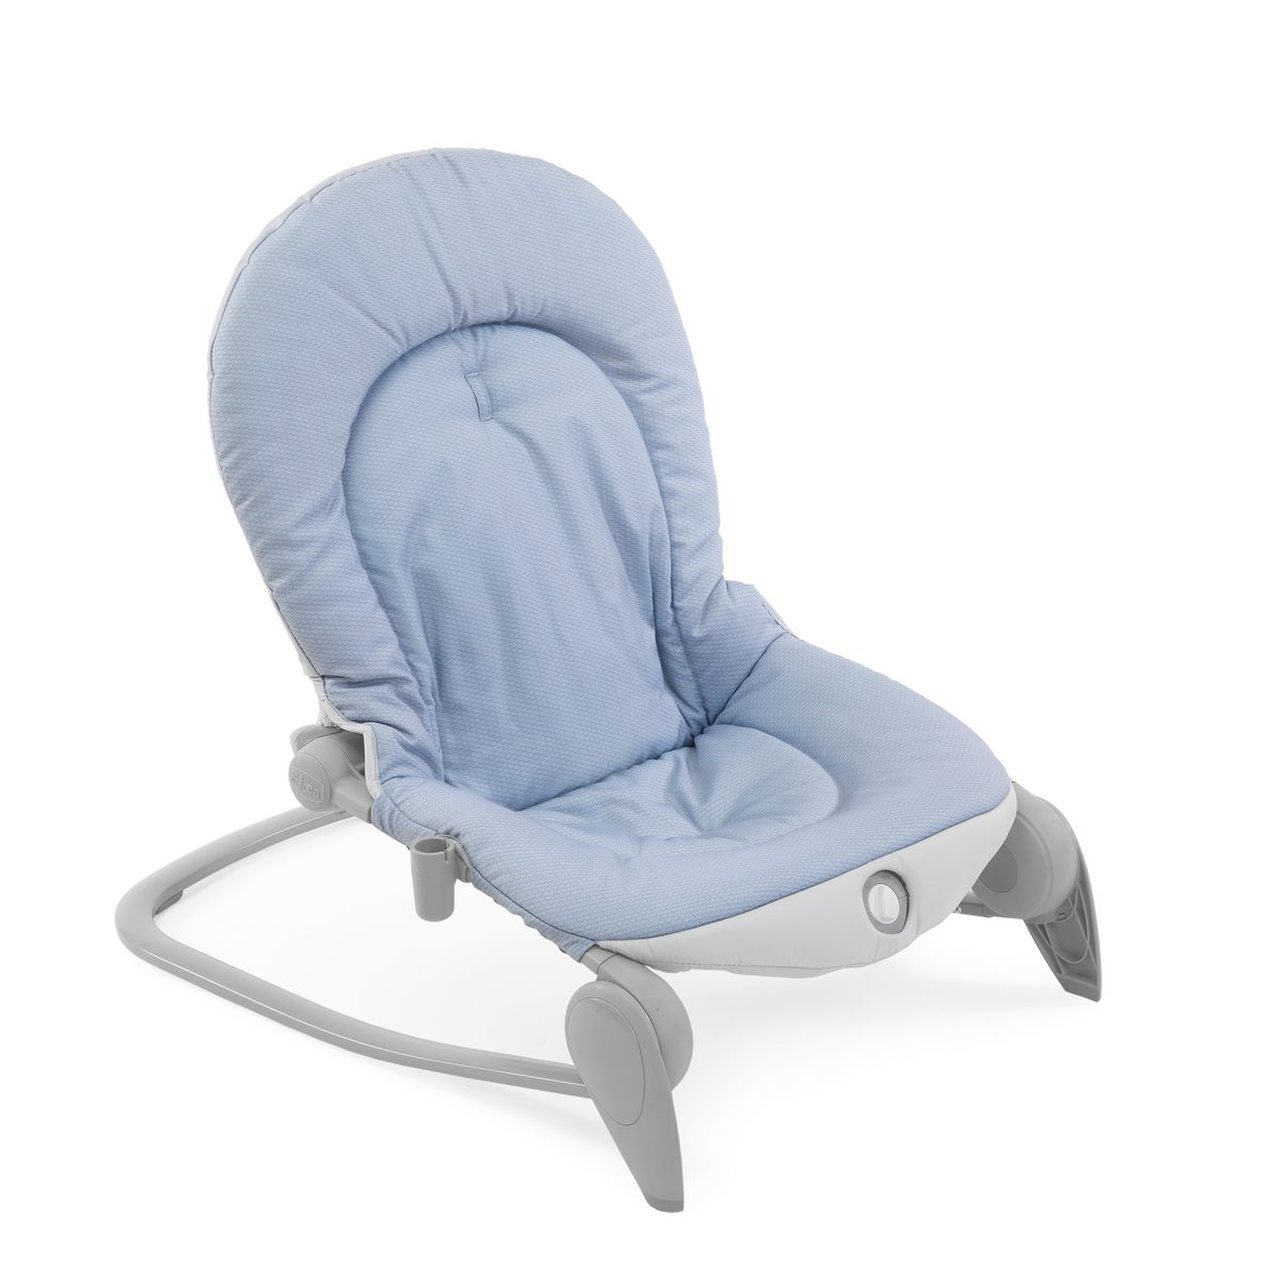 Já conhecem a nossa espreguiçadeira Relax & Play? Com movimento automático  e melodias para relaxar o bebé, promete muitas sestinhas confortáveis.  ❤️